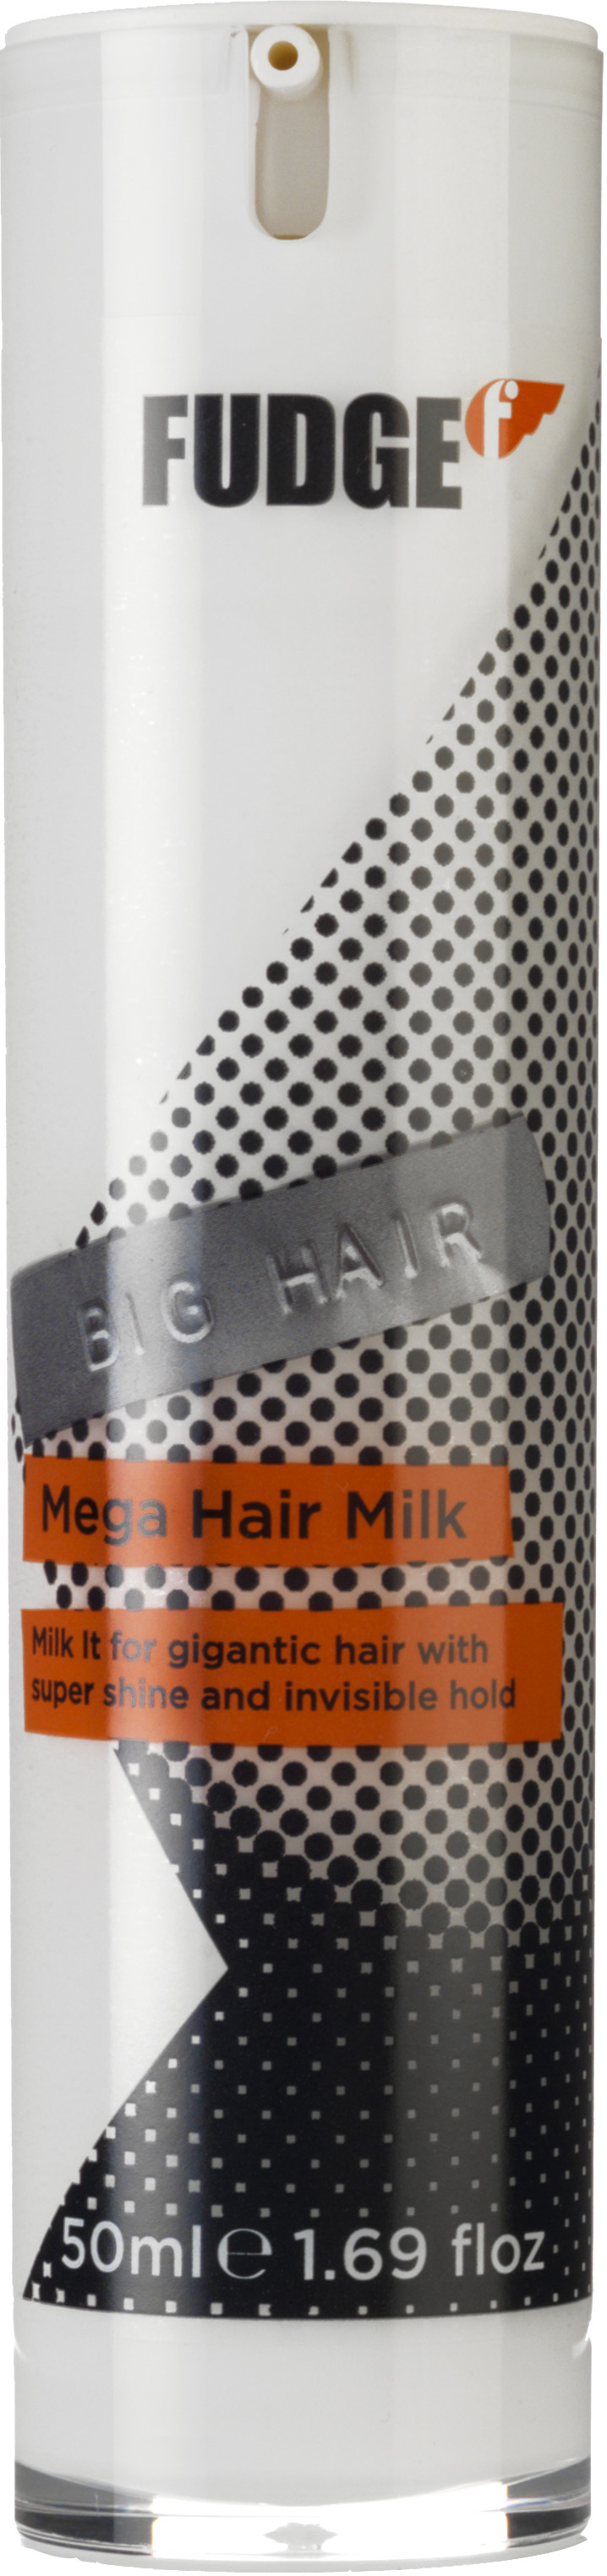 Fudge Big Hair Mega Hair Milk 50ml